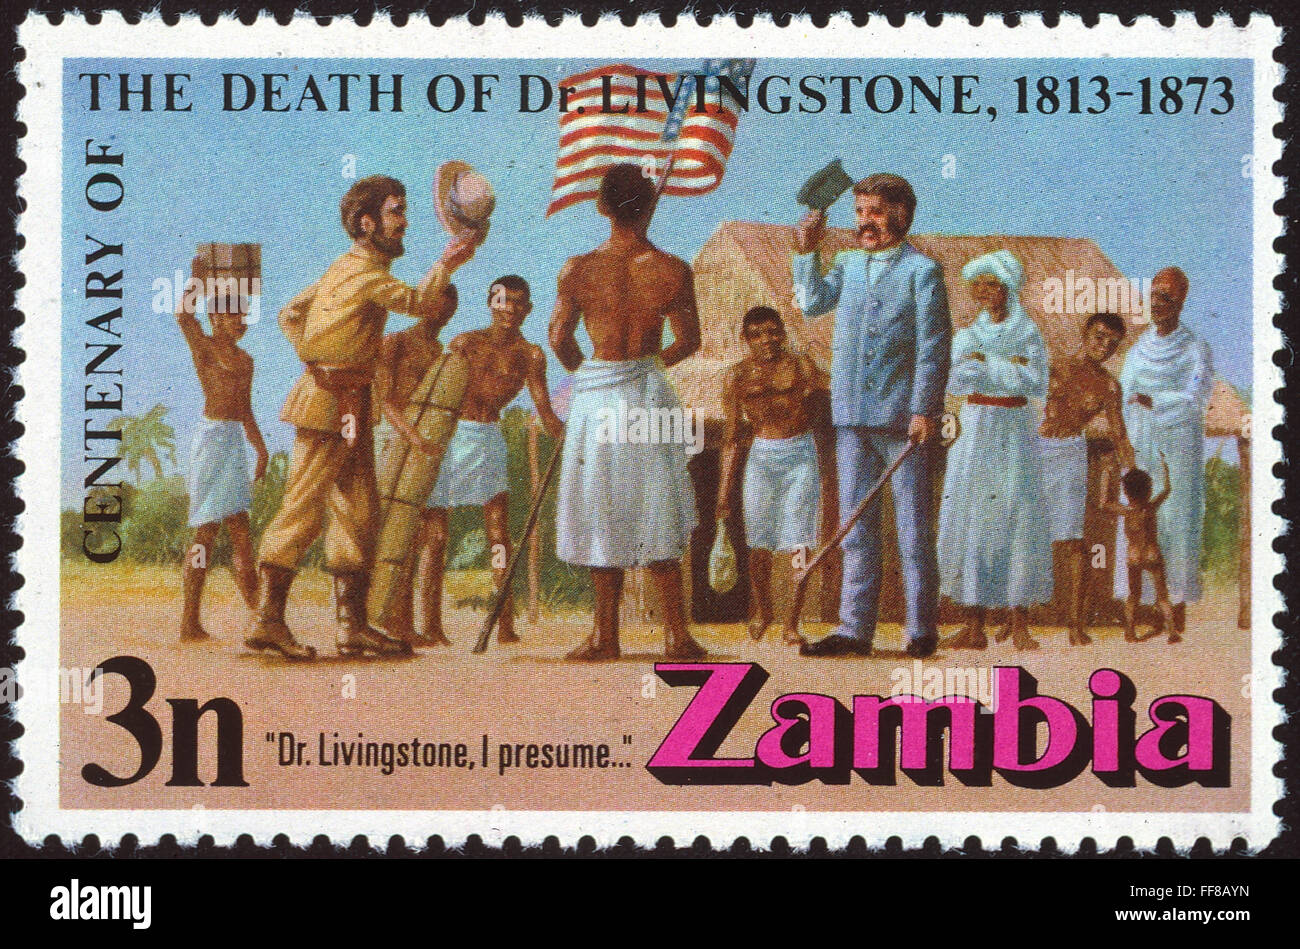 STANLEY y Livingstone, 1871. /Nel reunión de exploradores Henry Morton Stanley y David Livingstone en Ujiji, 10 de noviembre de 1871. Zambia Postage Stamp, 1973, publicado en conmemoración del centenario de la muerte de Livingstone. Foto de stock